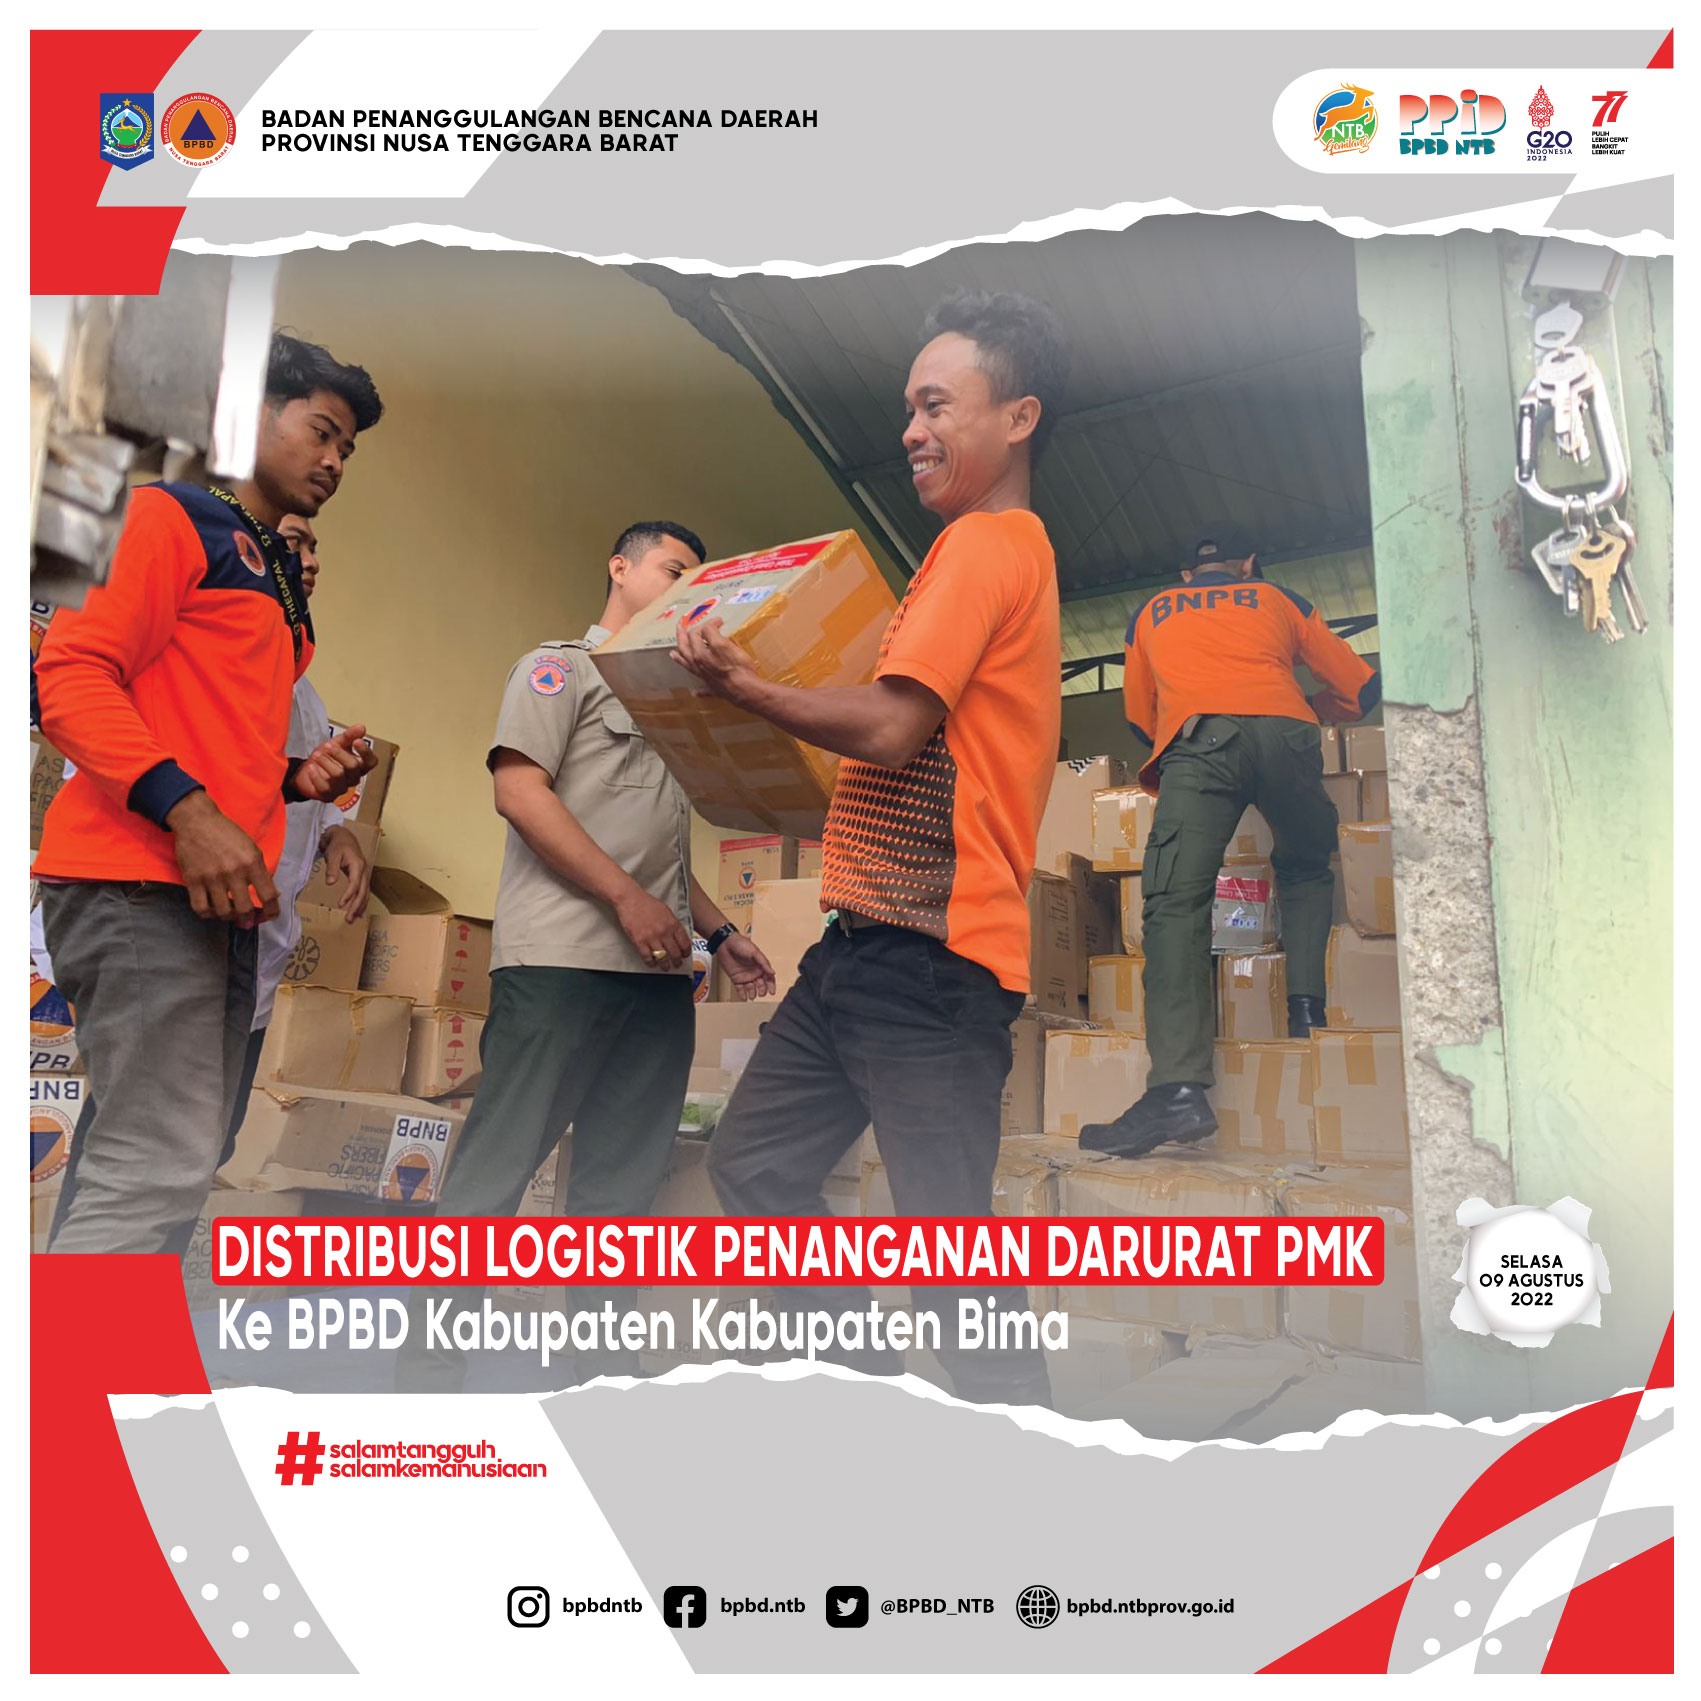 Koordinasi Dan Pendistribusian Logistik Penanganan Darurat PMK ke BPBD Kabupaten Bima (Selasa, 09 Agustus 2022)